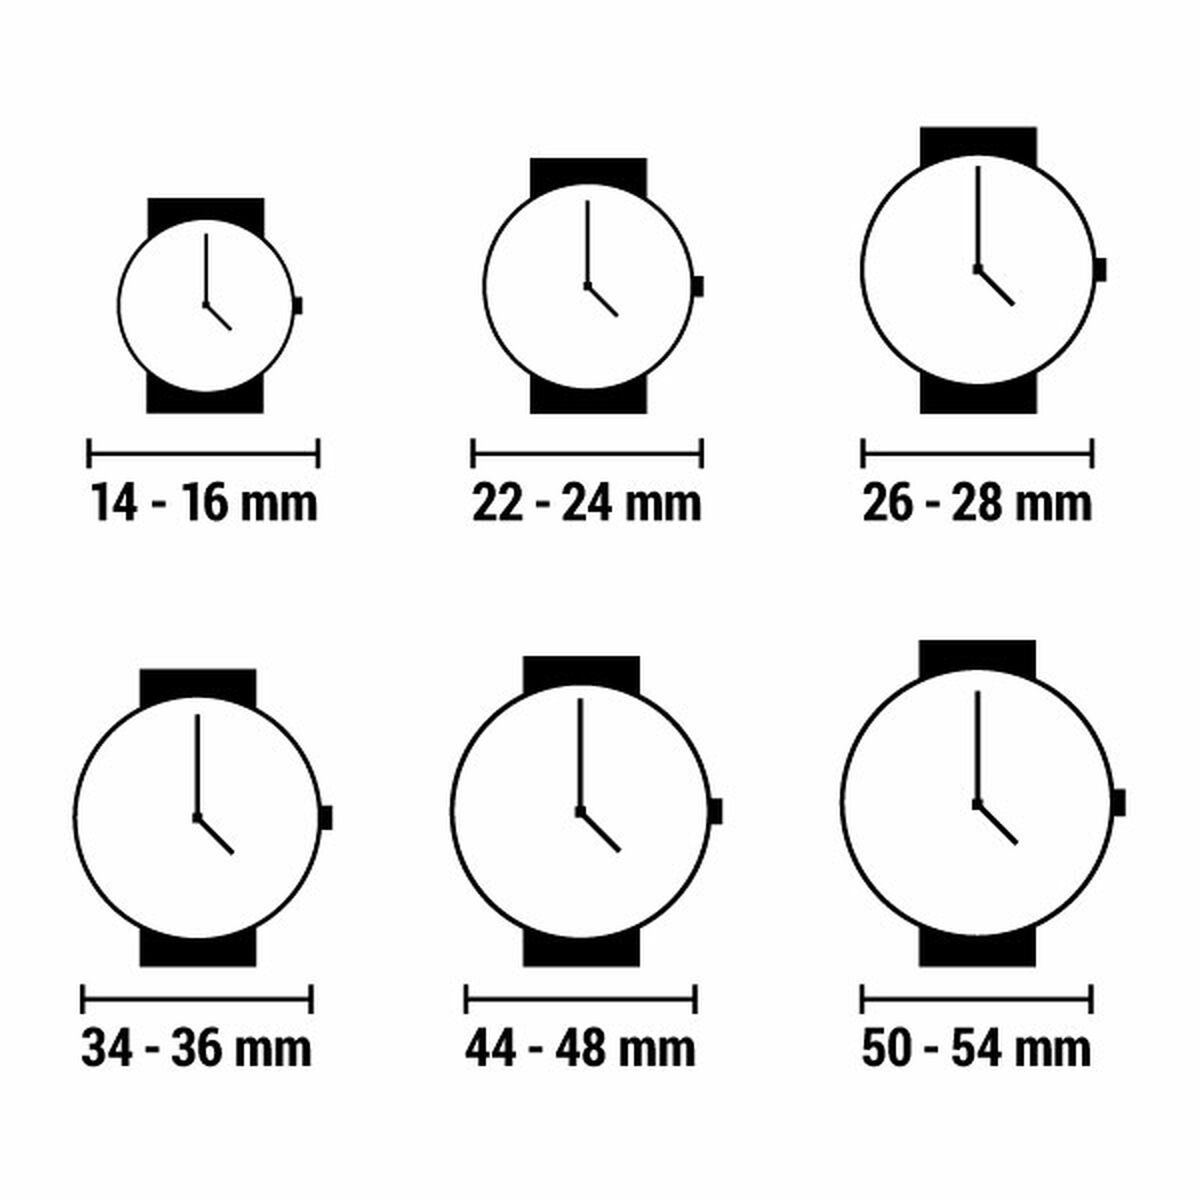 Horloge Heren Nautica NAI18510G (Ø 44 mm)